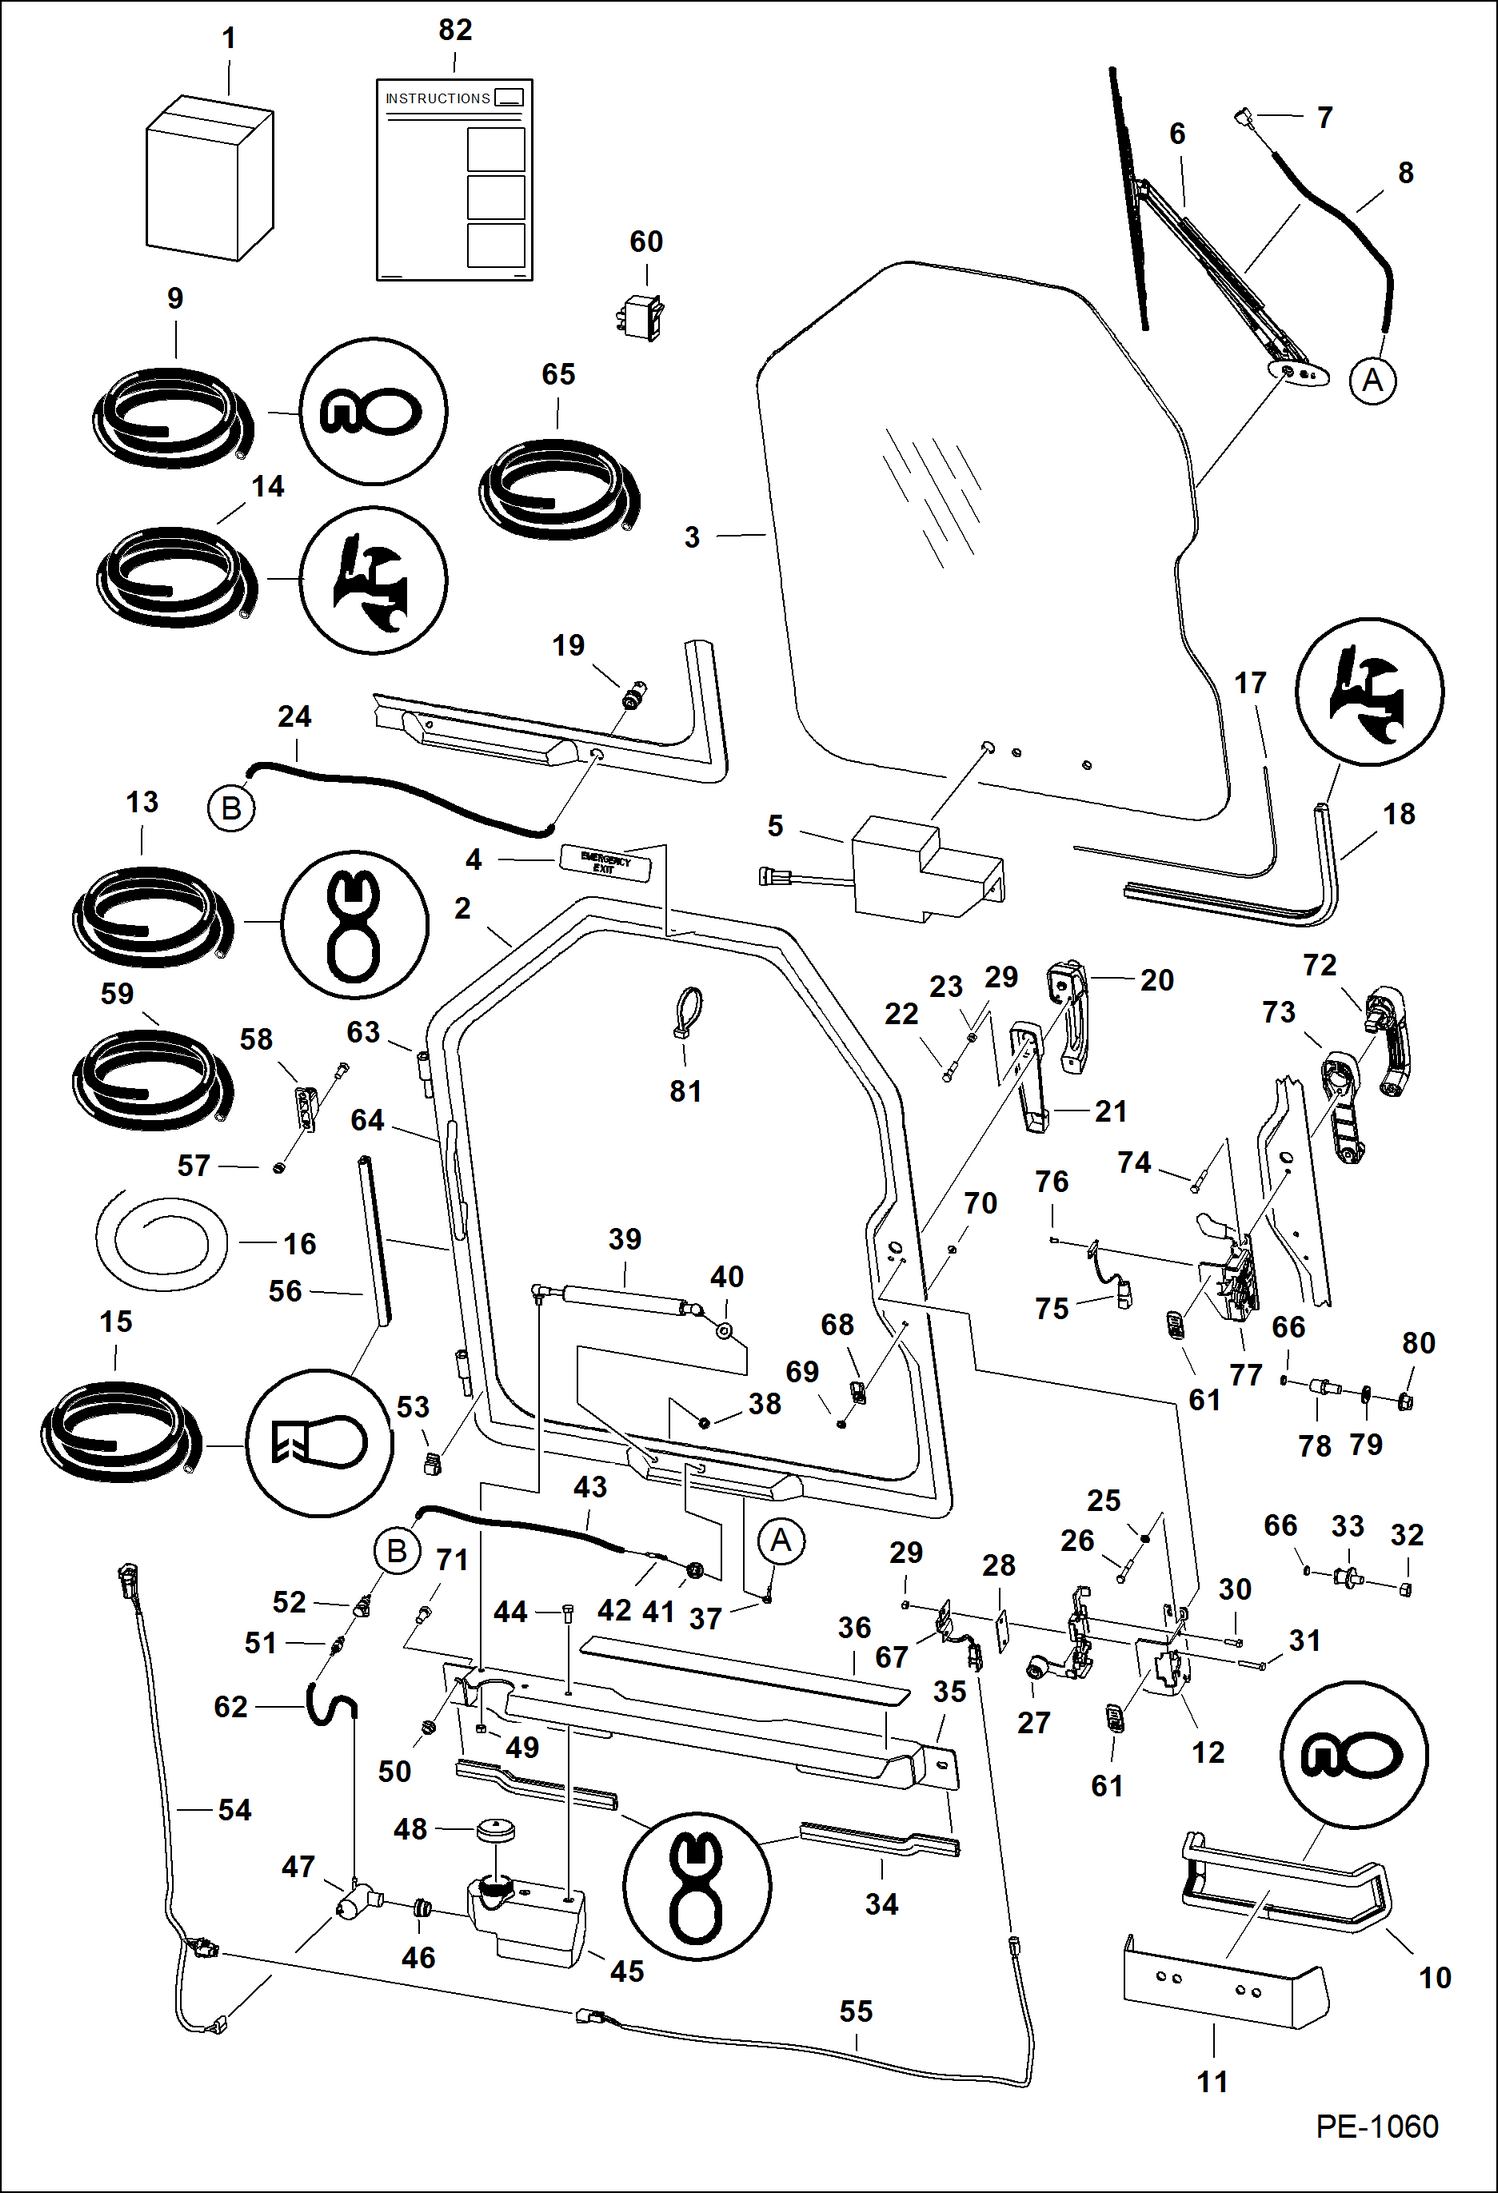 Схема запчастей Bobcat 700s - CAB DOOR ACCESSORIES & OPTIONS